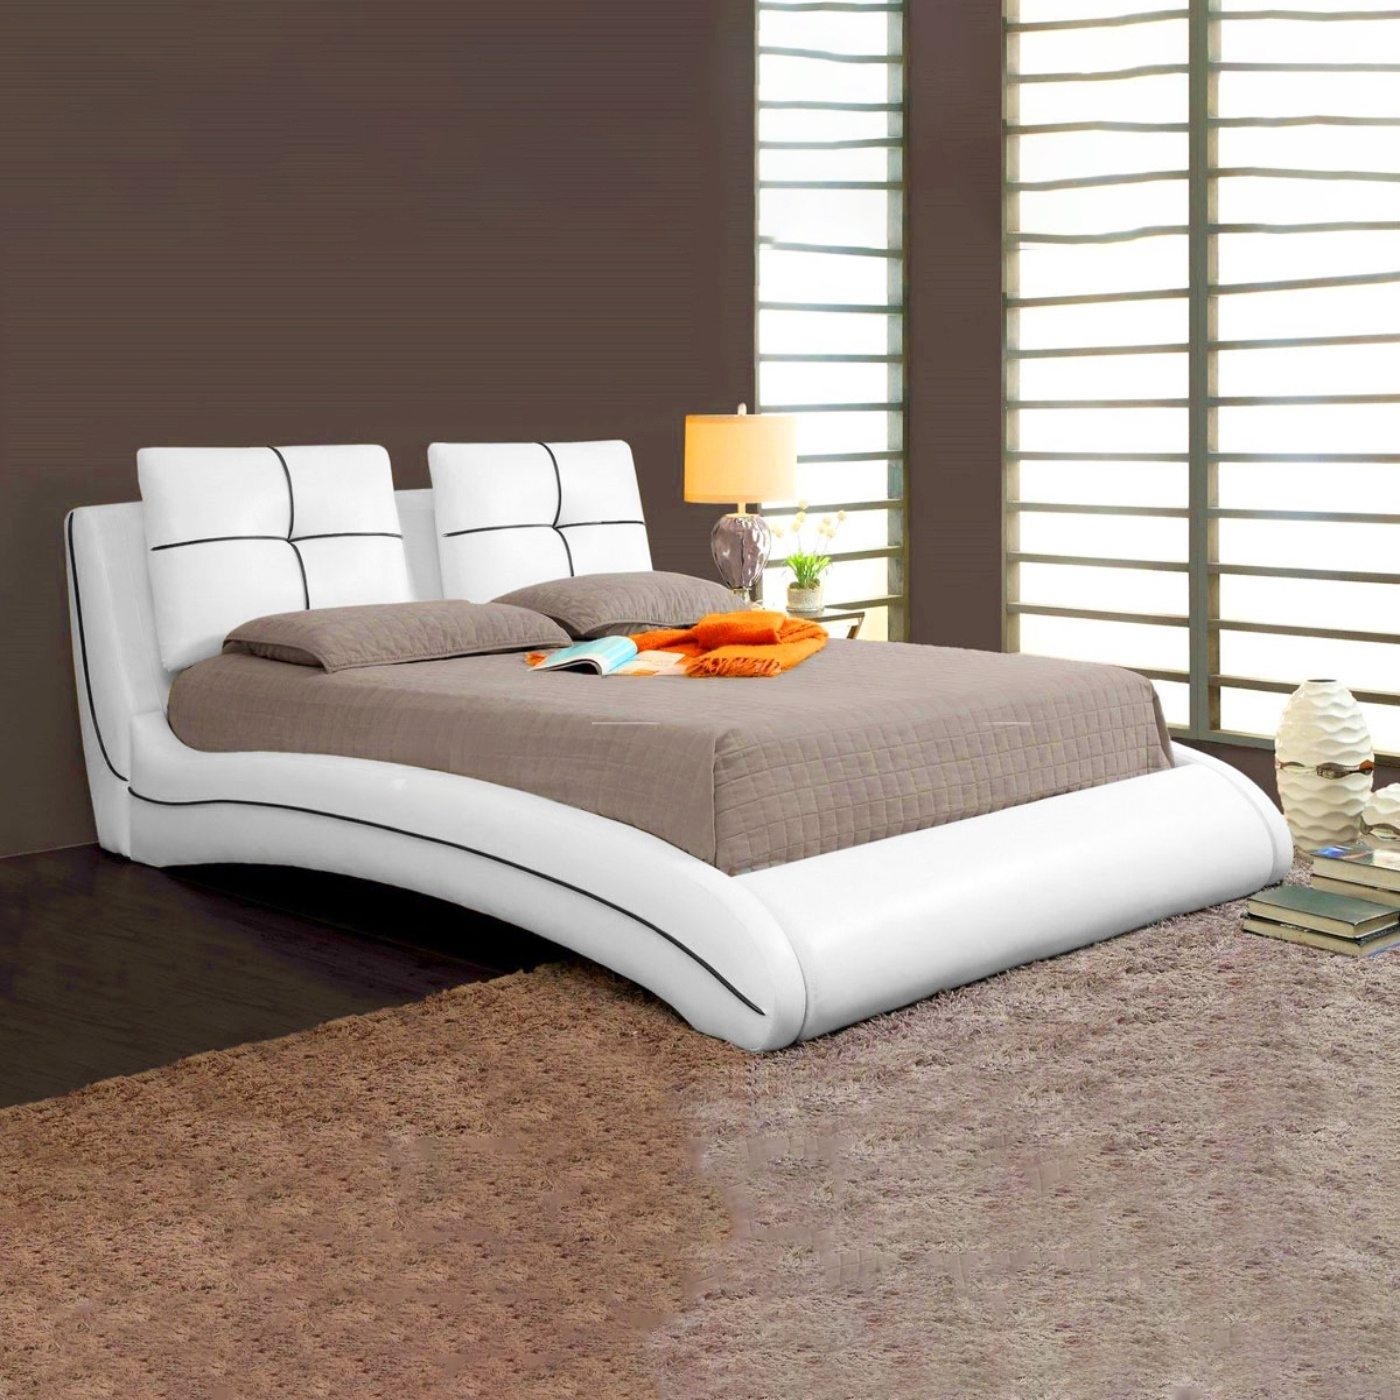 Fsh Furniture Curved Upholstered Bed Frame